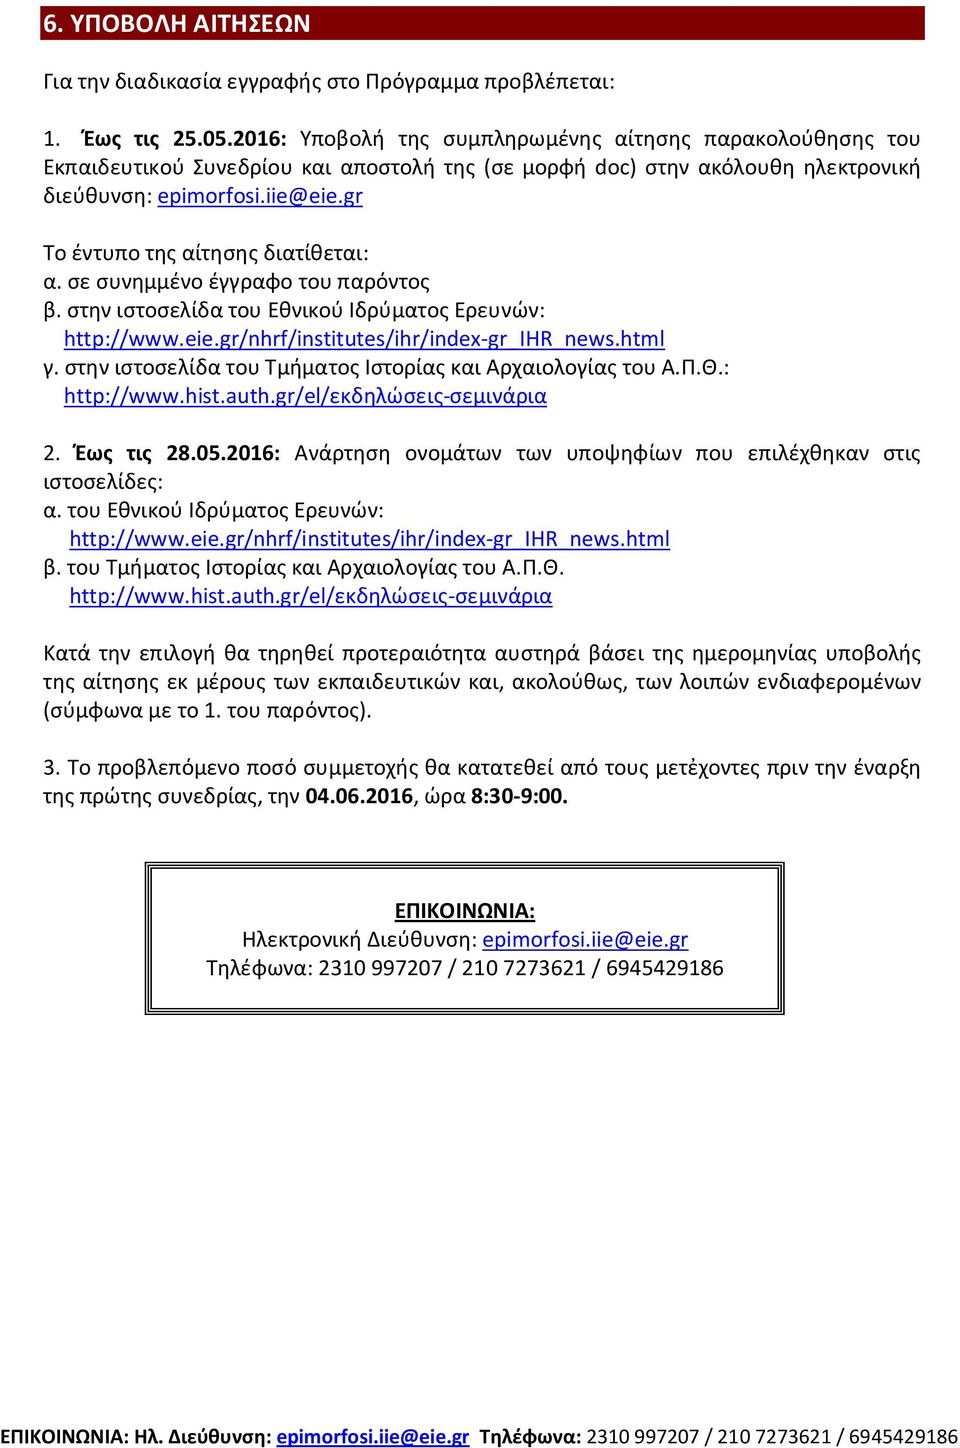 gr Το έντυπο της αίτησης διατίθεται: α. σε συνημμένο έγγραφο του παρόντος β. στην ιστοσελίδα του Εθνικού Ιδρύματος Ερευνών: http://www.eie.gr/nhrf/institutes/ihr/index-gr_ihr_news.html γ.